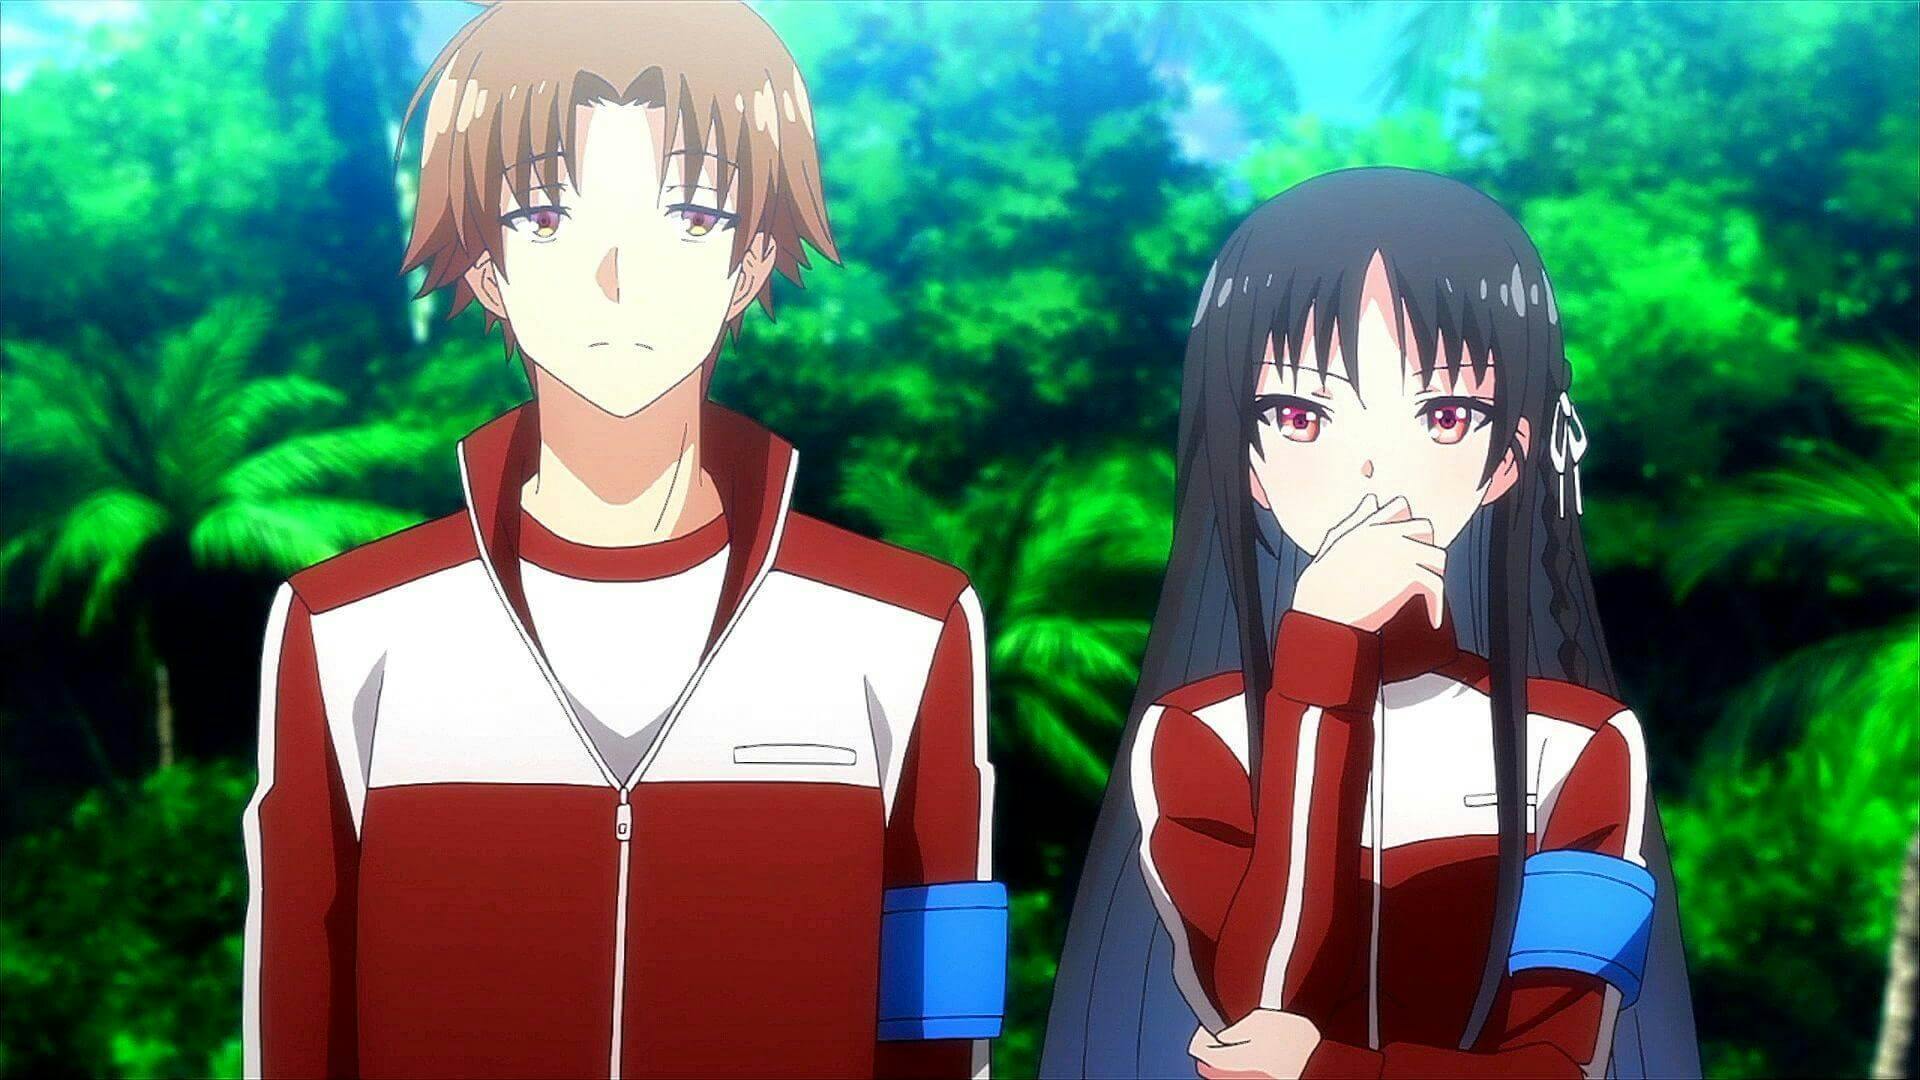 Kiyotaka e suzune no exame da ilha, com suas roupas vermelhas enquanto olham algo e suzune está com uma mão no queixo